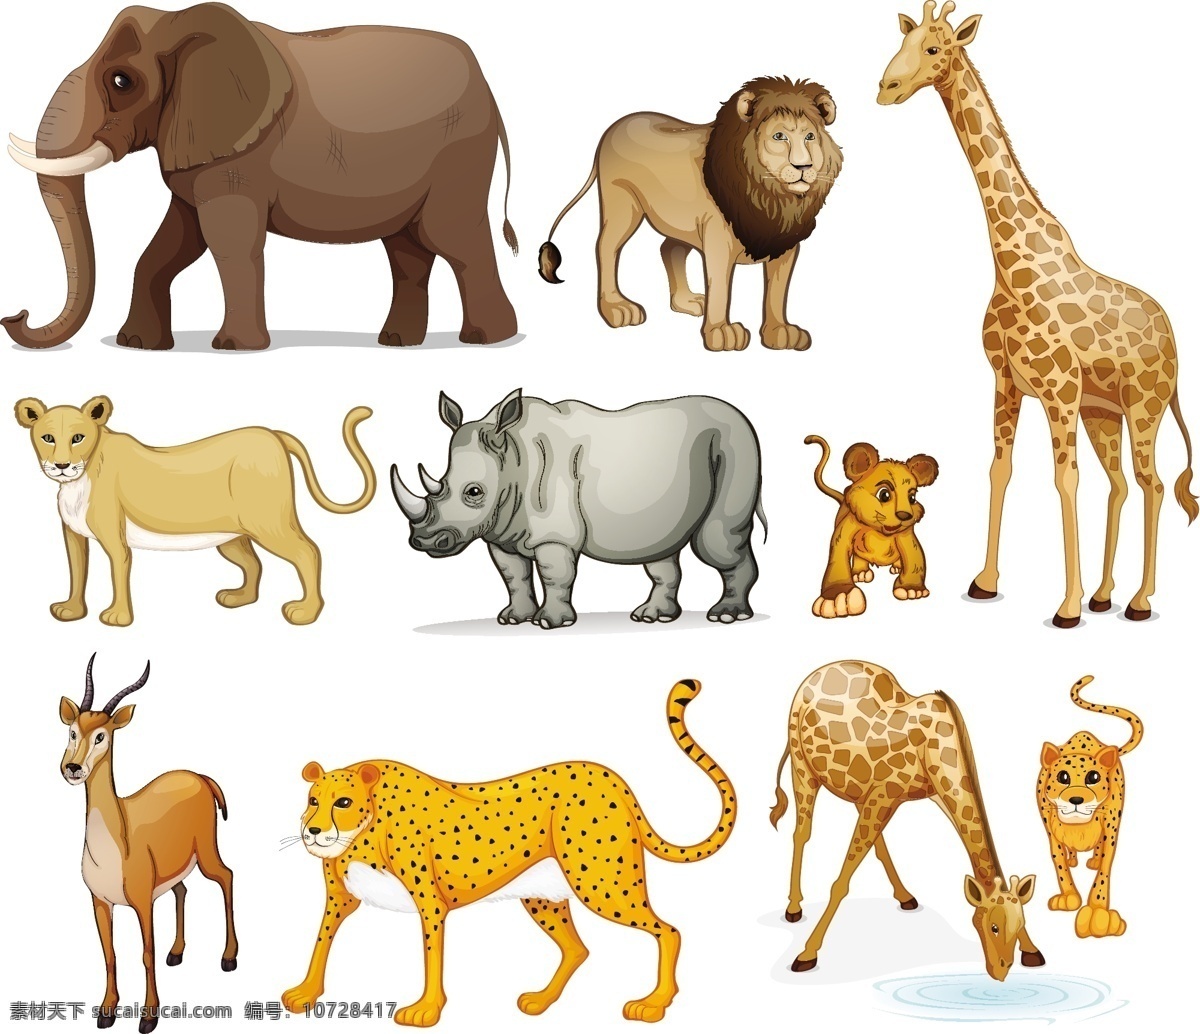 卡通动物 可爱 手绘 狮子 豹子 鹿 长颈鹿 大象 犀牛 卡通设计 矢量 生物世界 野生动物